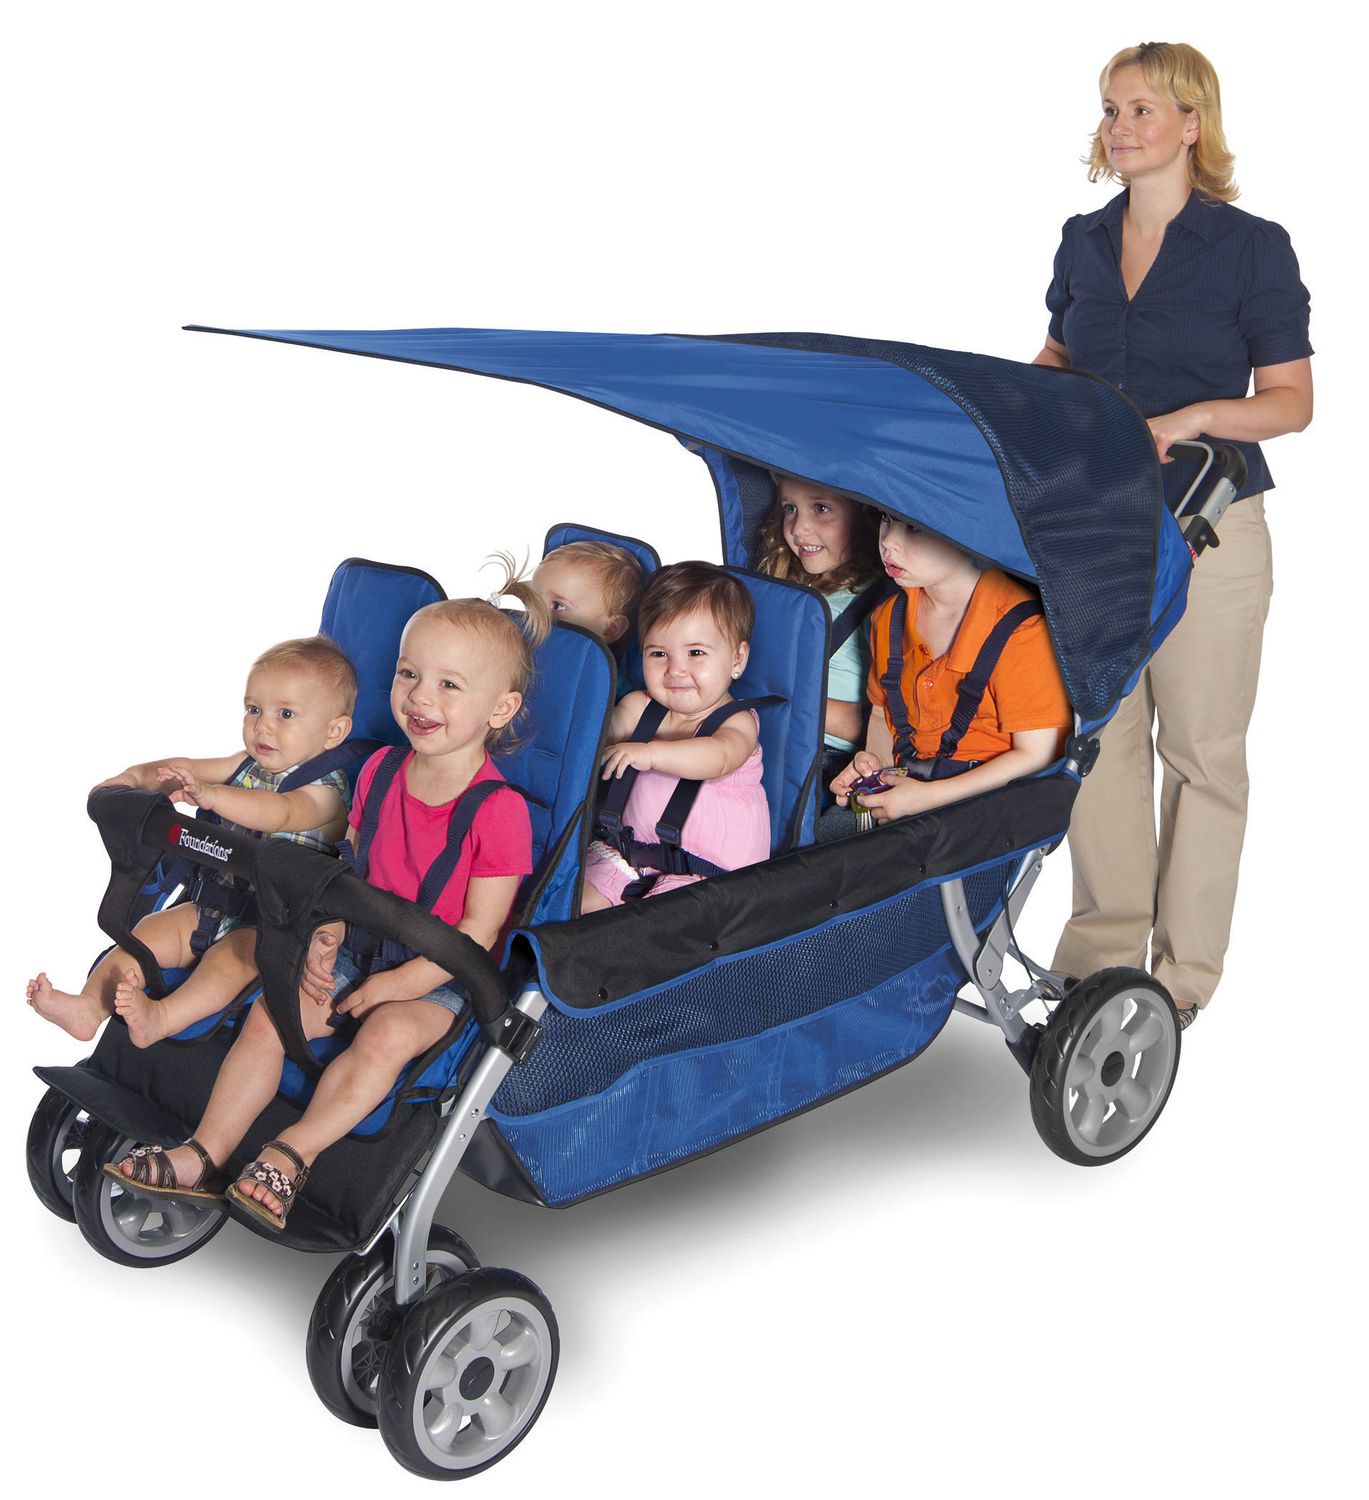 8 child stroller